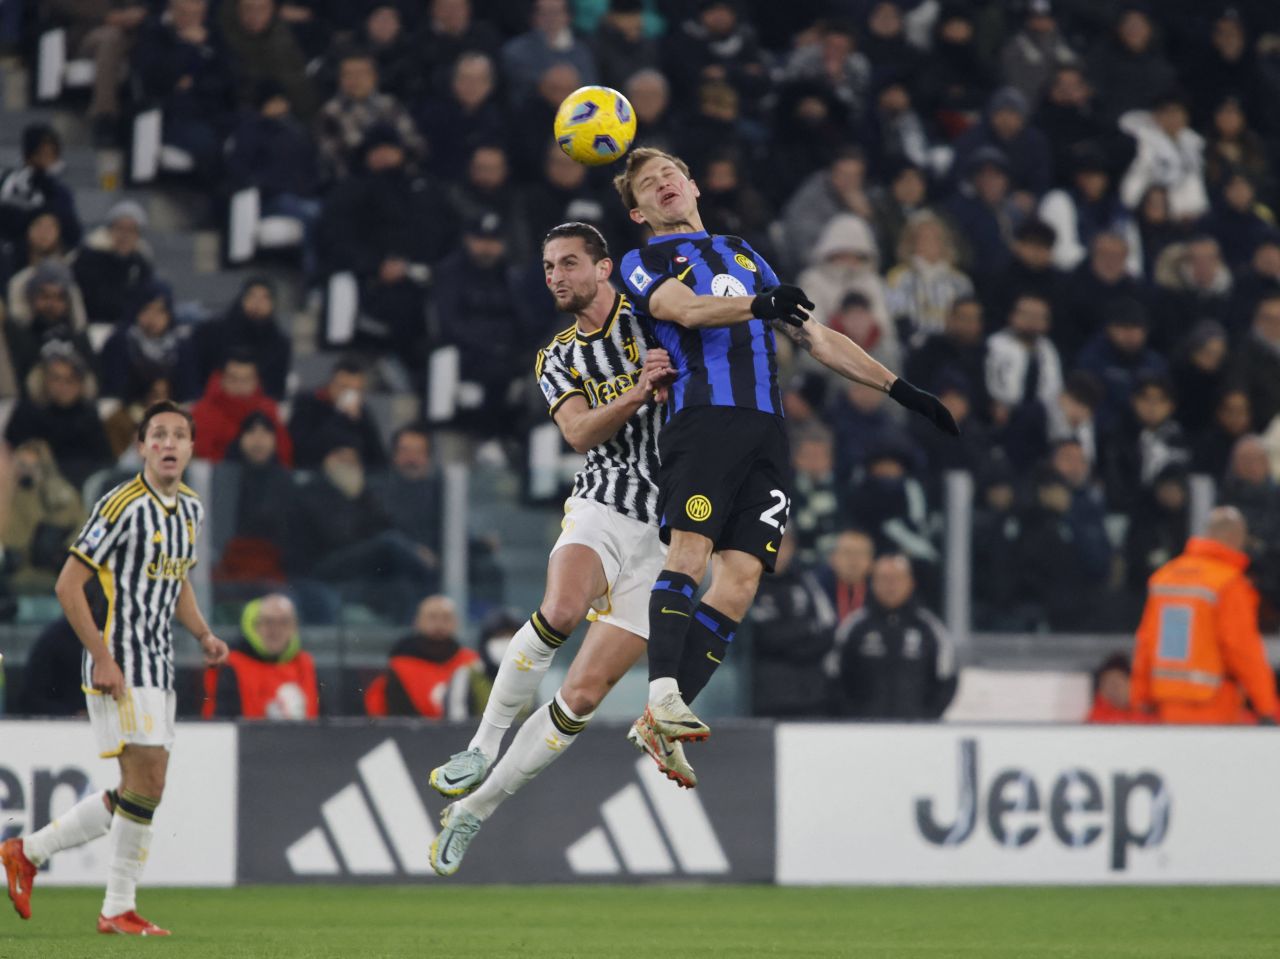 Inter - Juventus, la partita della giornata in Italia (21:45), il commento di Dan Chilom _1